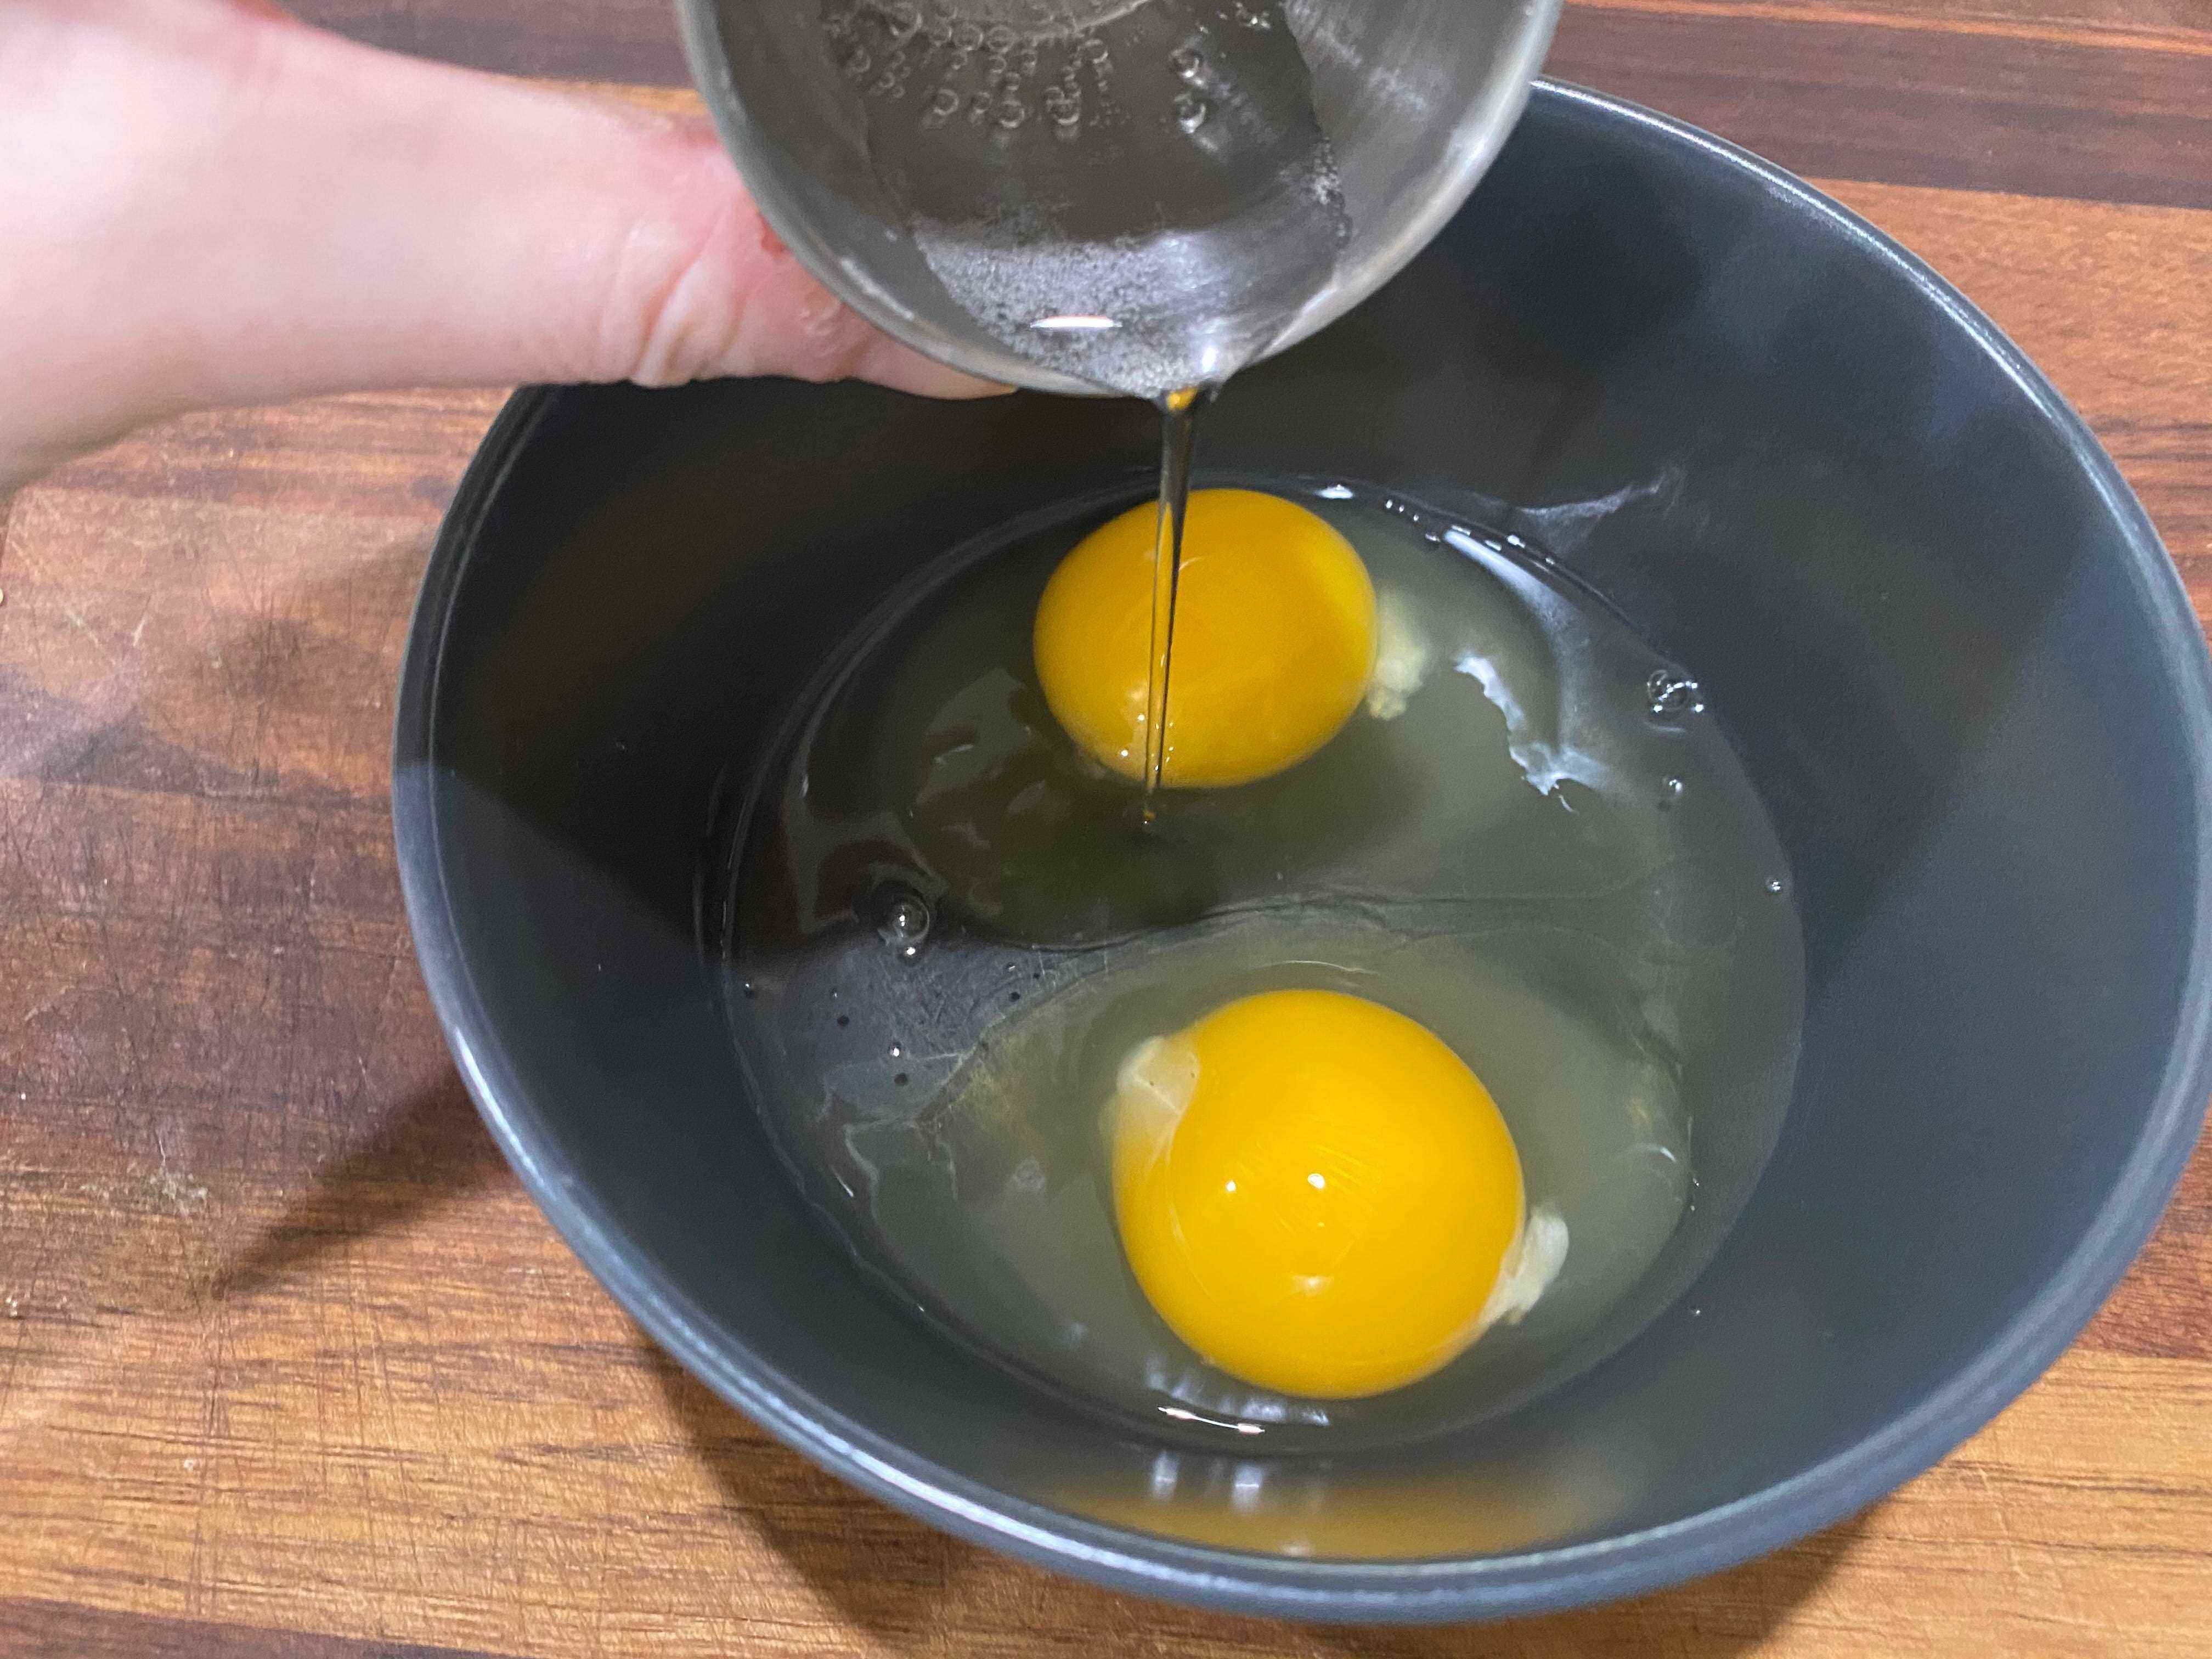 paige gießt selterswasser in eine schüssel mit zwei aufgeschlagenen eiern